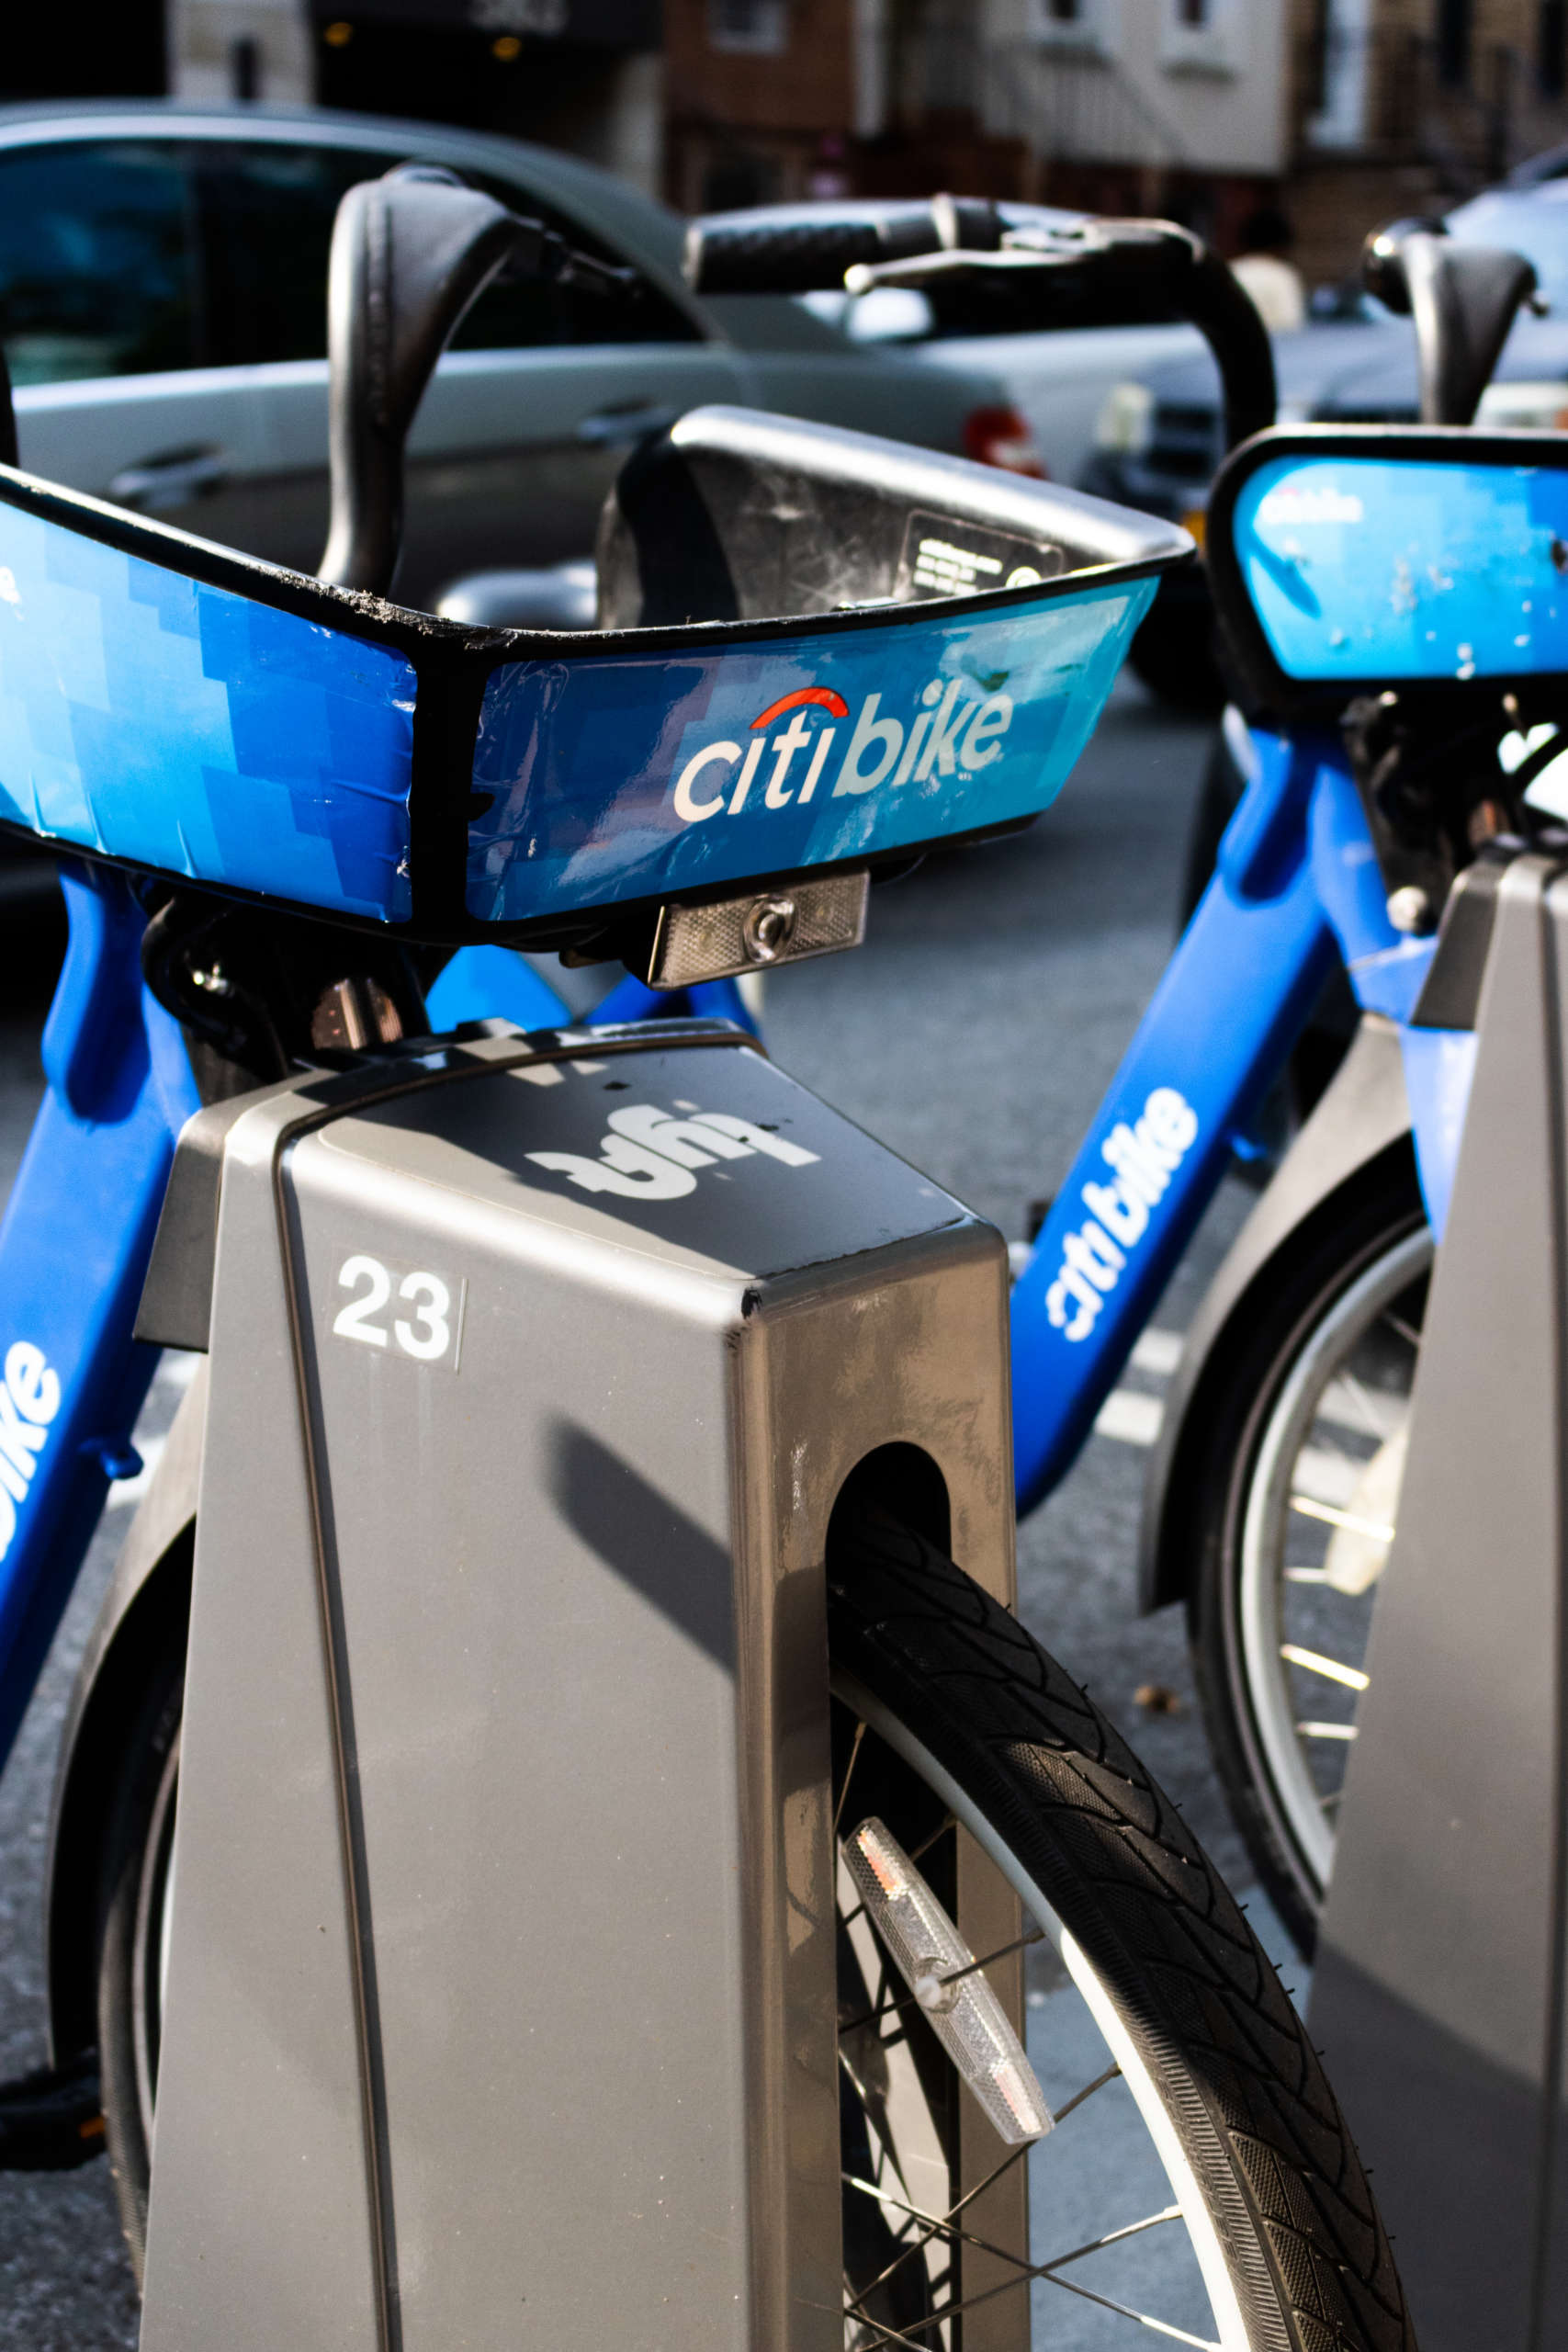 A close-up of a Citi Bike.